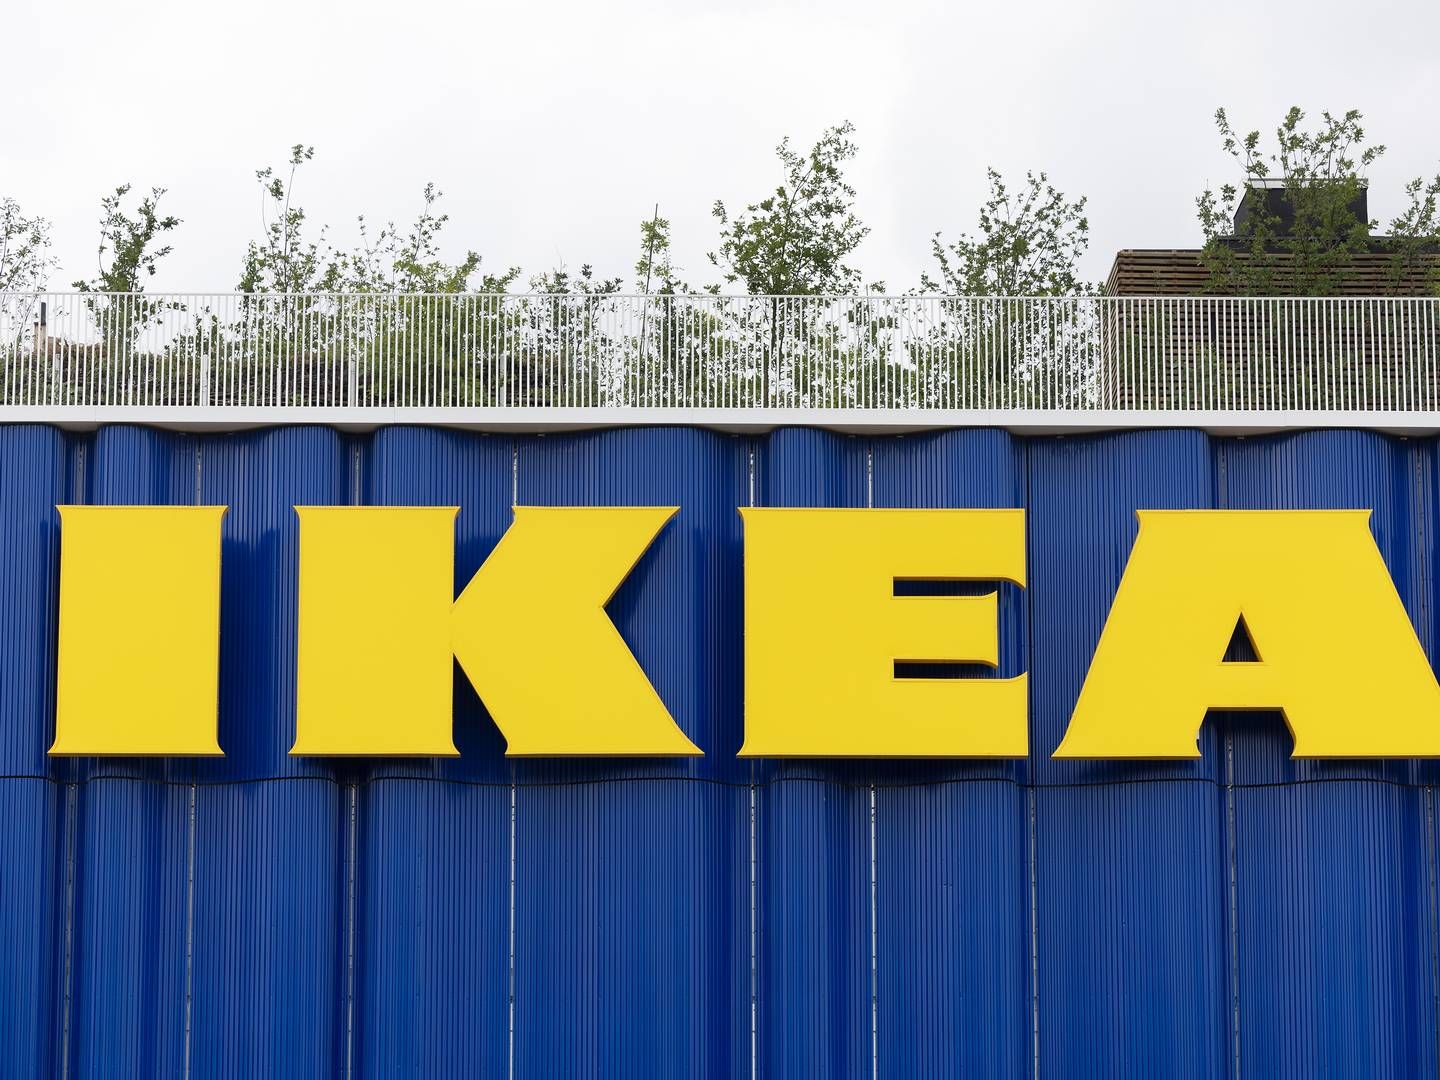 Ikea åbnede sidste år det første bynære varehus i København. | Foto: Thomas Borberg/Politiken